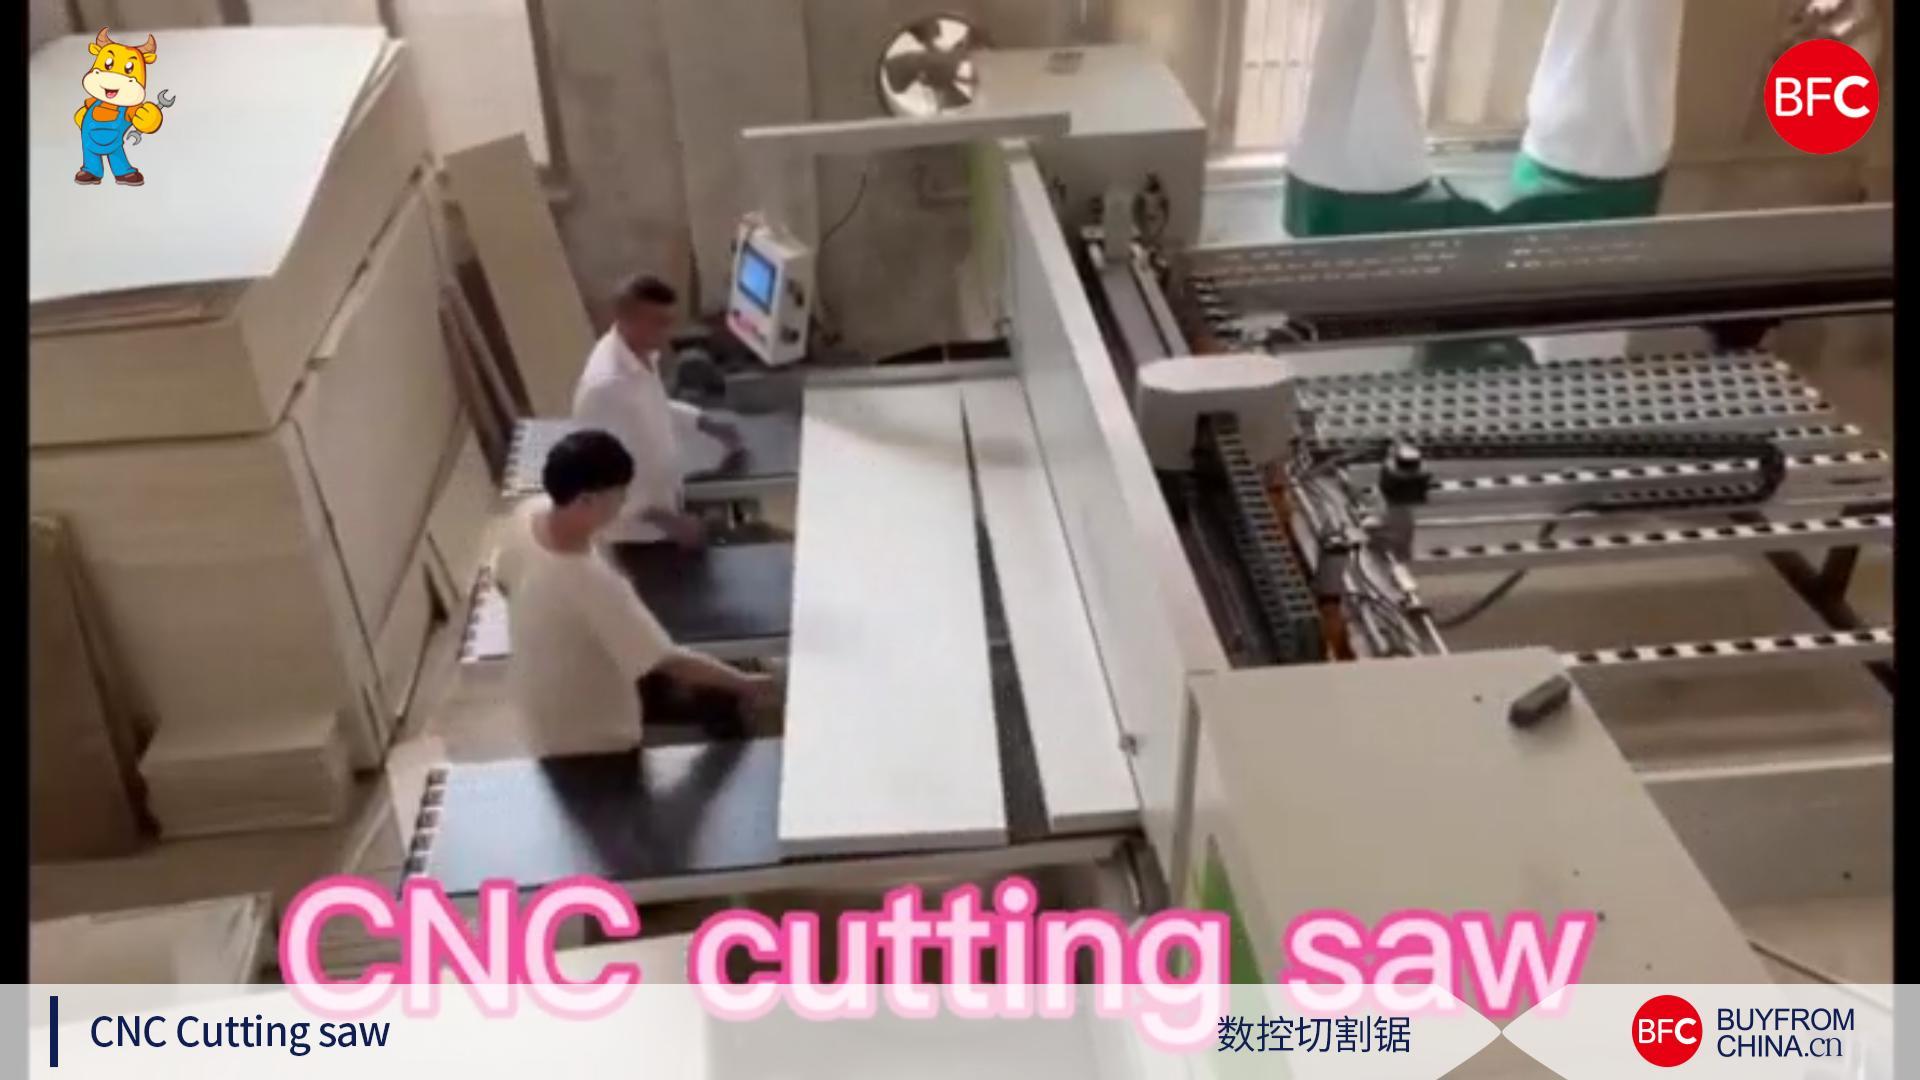 CNC cutting saw